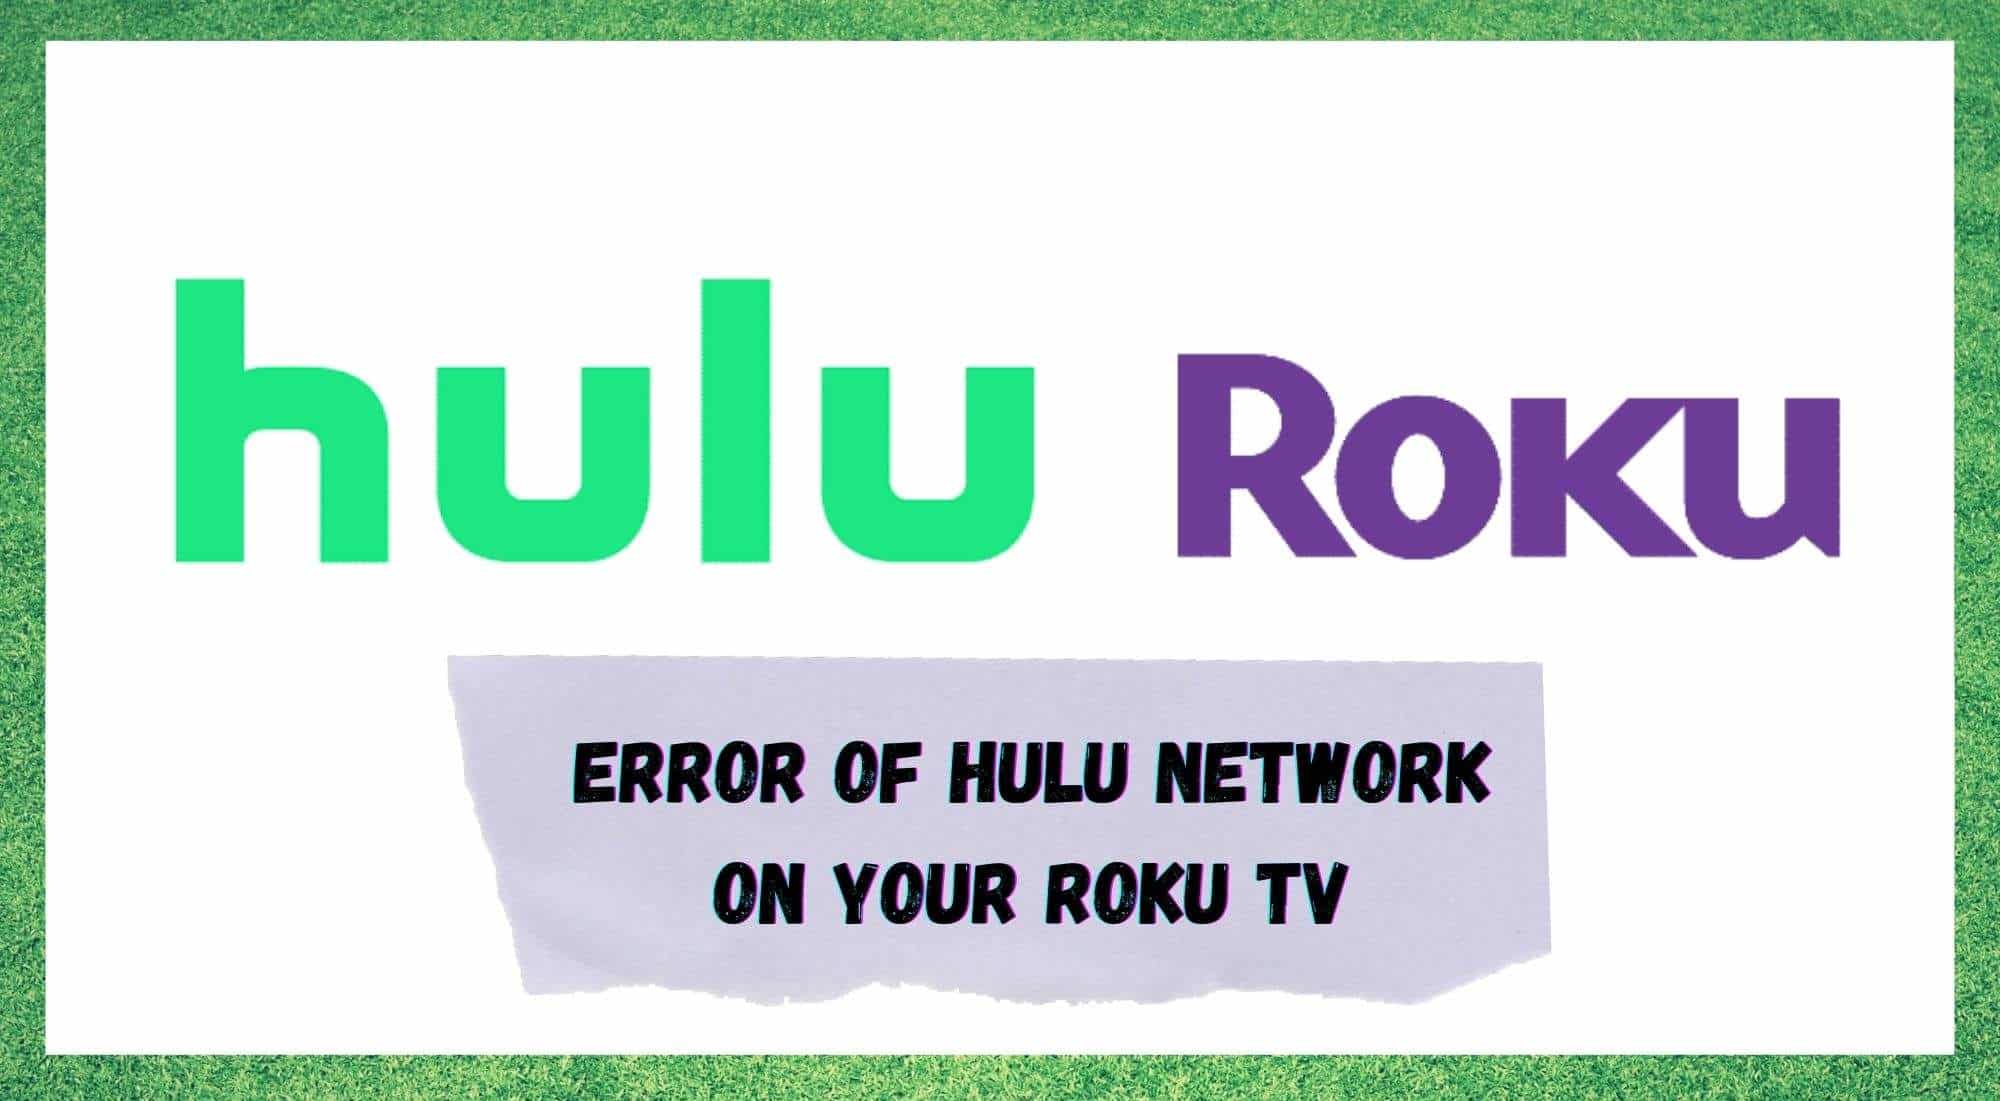 8 វិធីដើម្បីជួសជុលកំហុសបណ្តាញ Hulu នៅលើ Roku